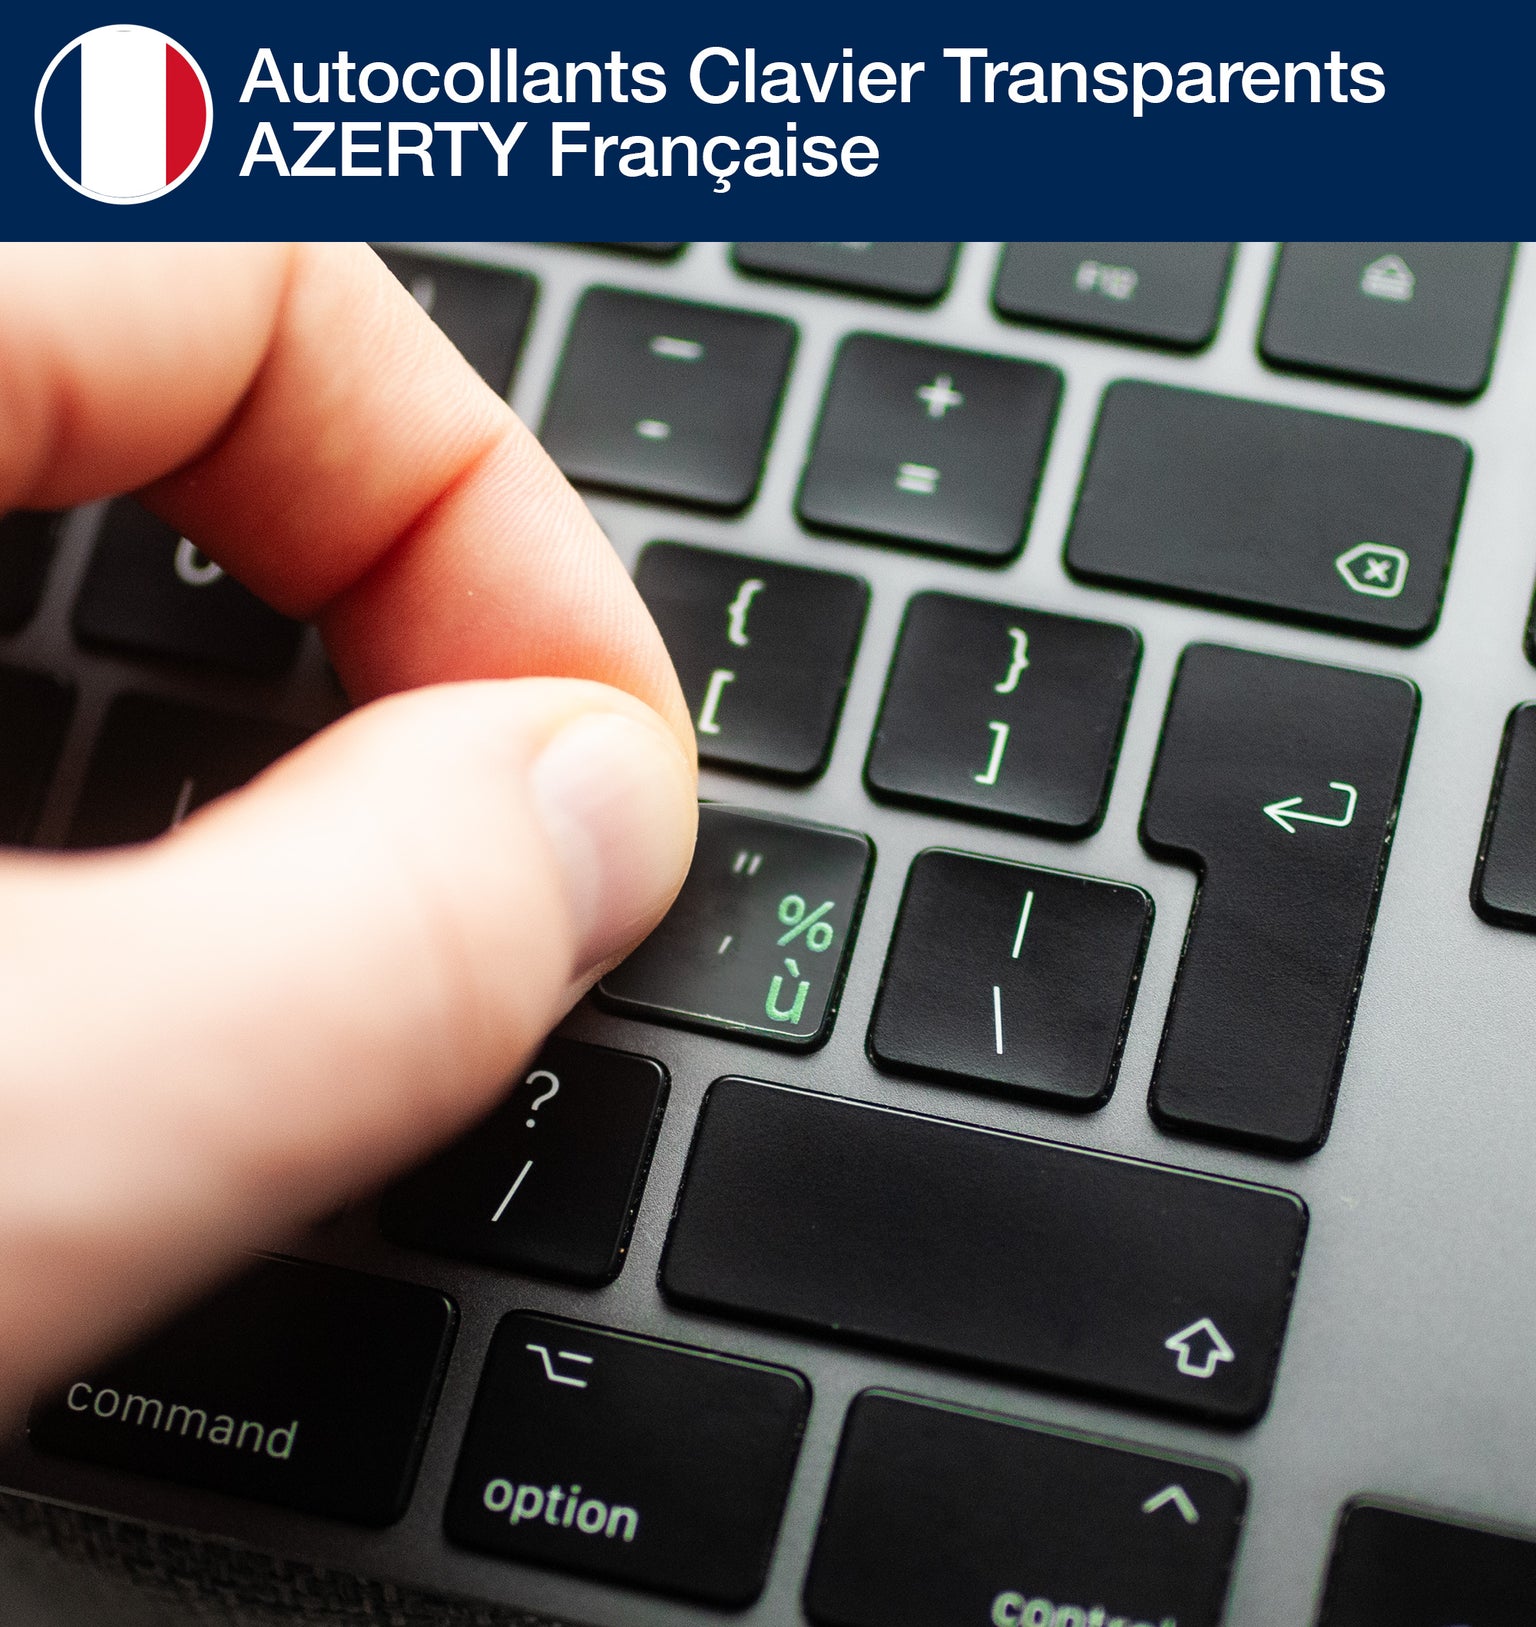 Stickers Autocollants Clavier Transparents AZERTY Française